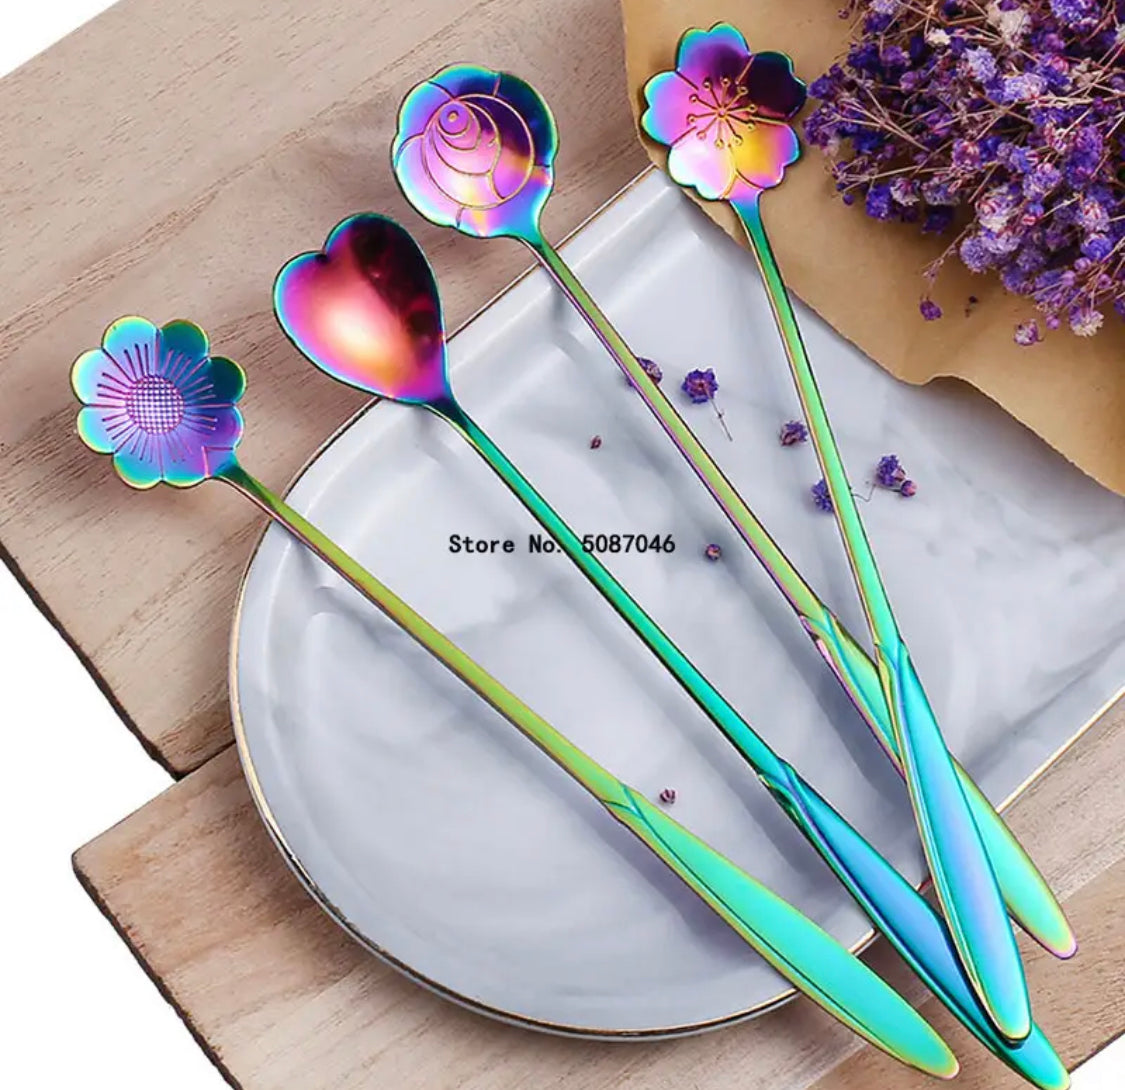 Long Magical Rainbow Spoon